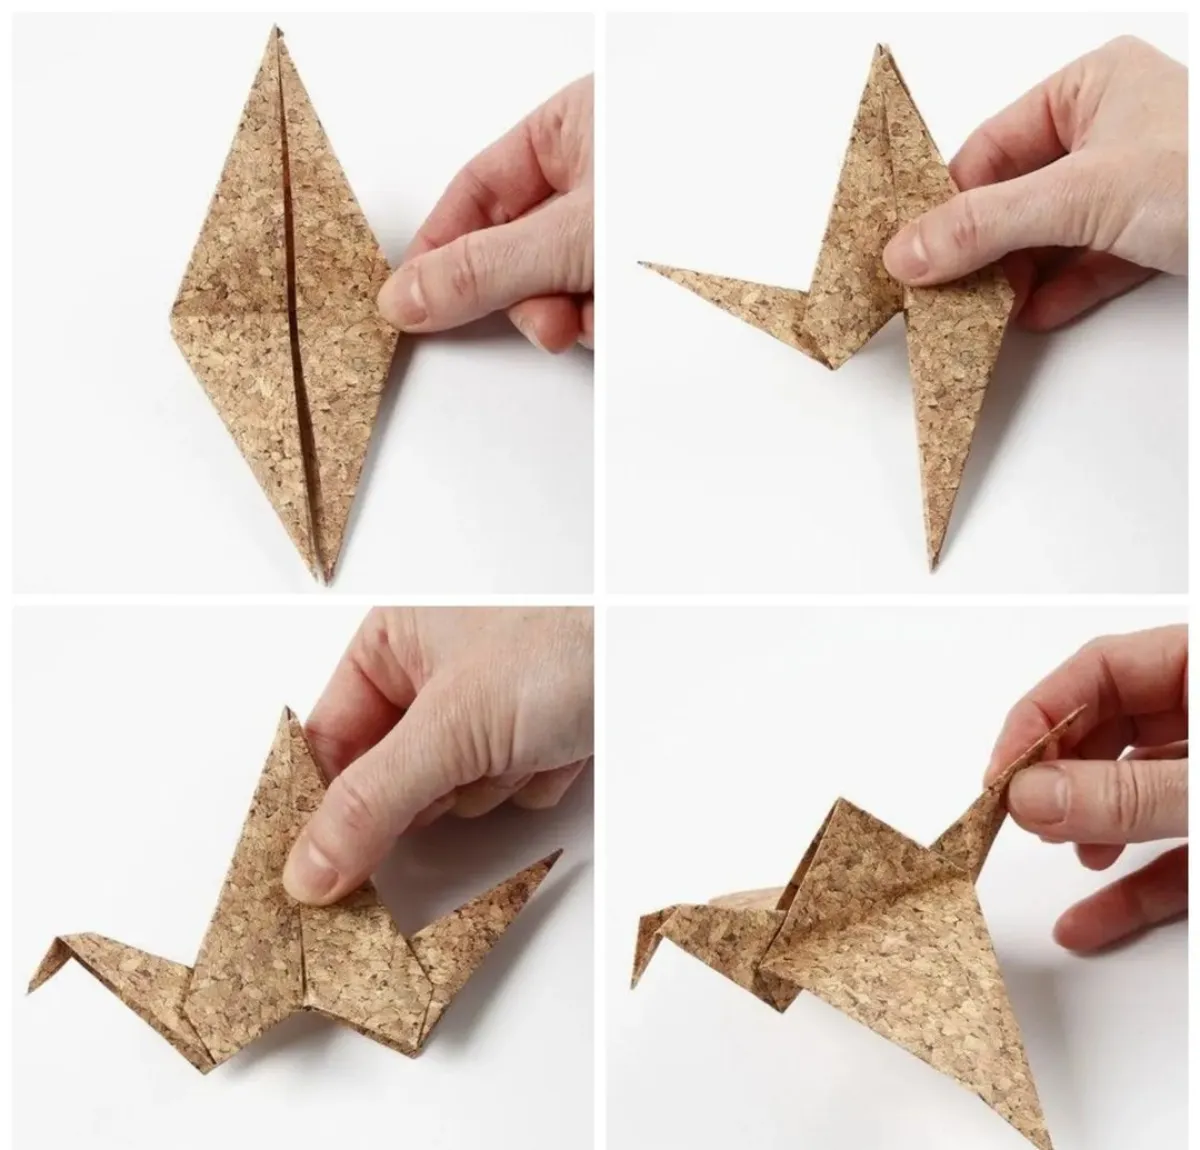 bildanleitung für diy origami kranich